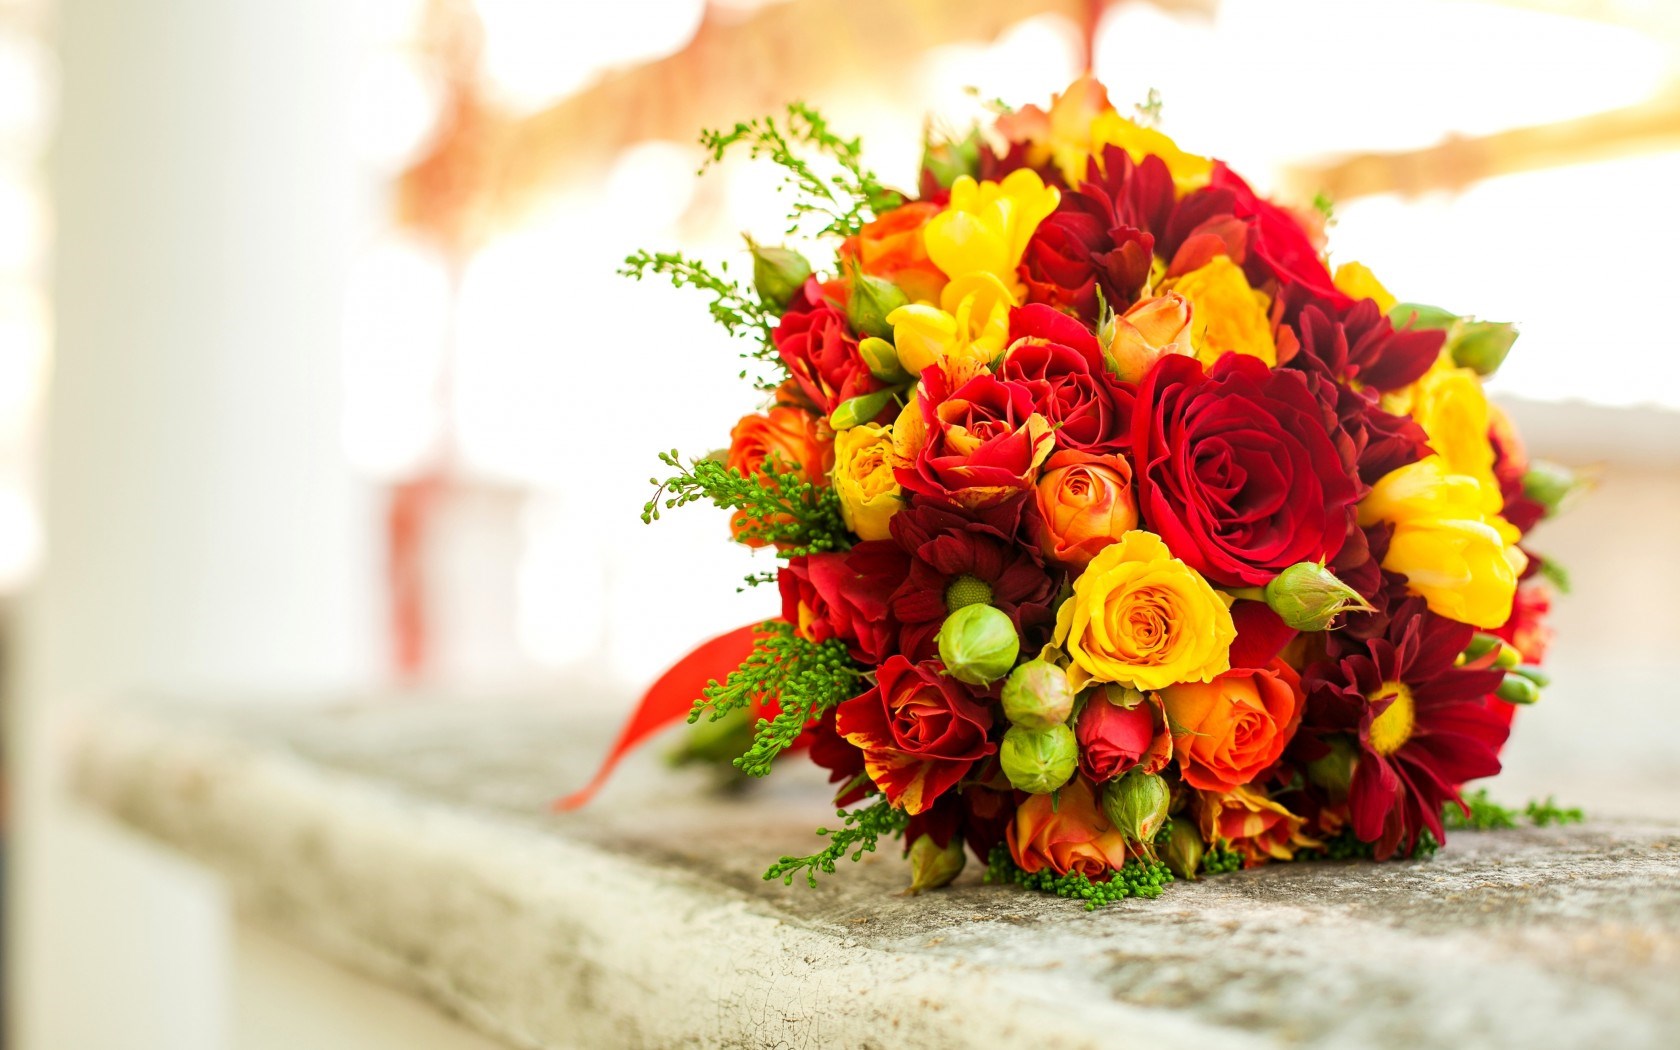 bouquet tapete,blume,strauß,blumen arrangement,floristik,schnittblumen